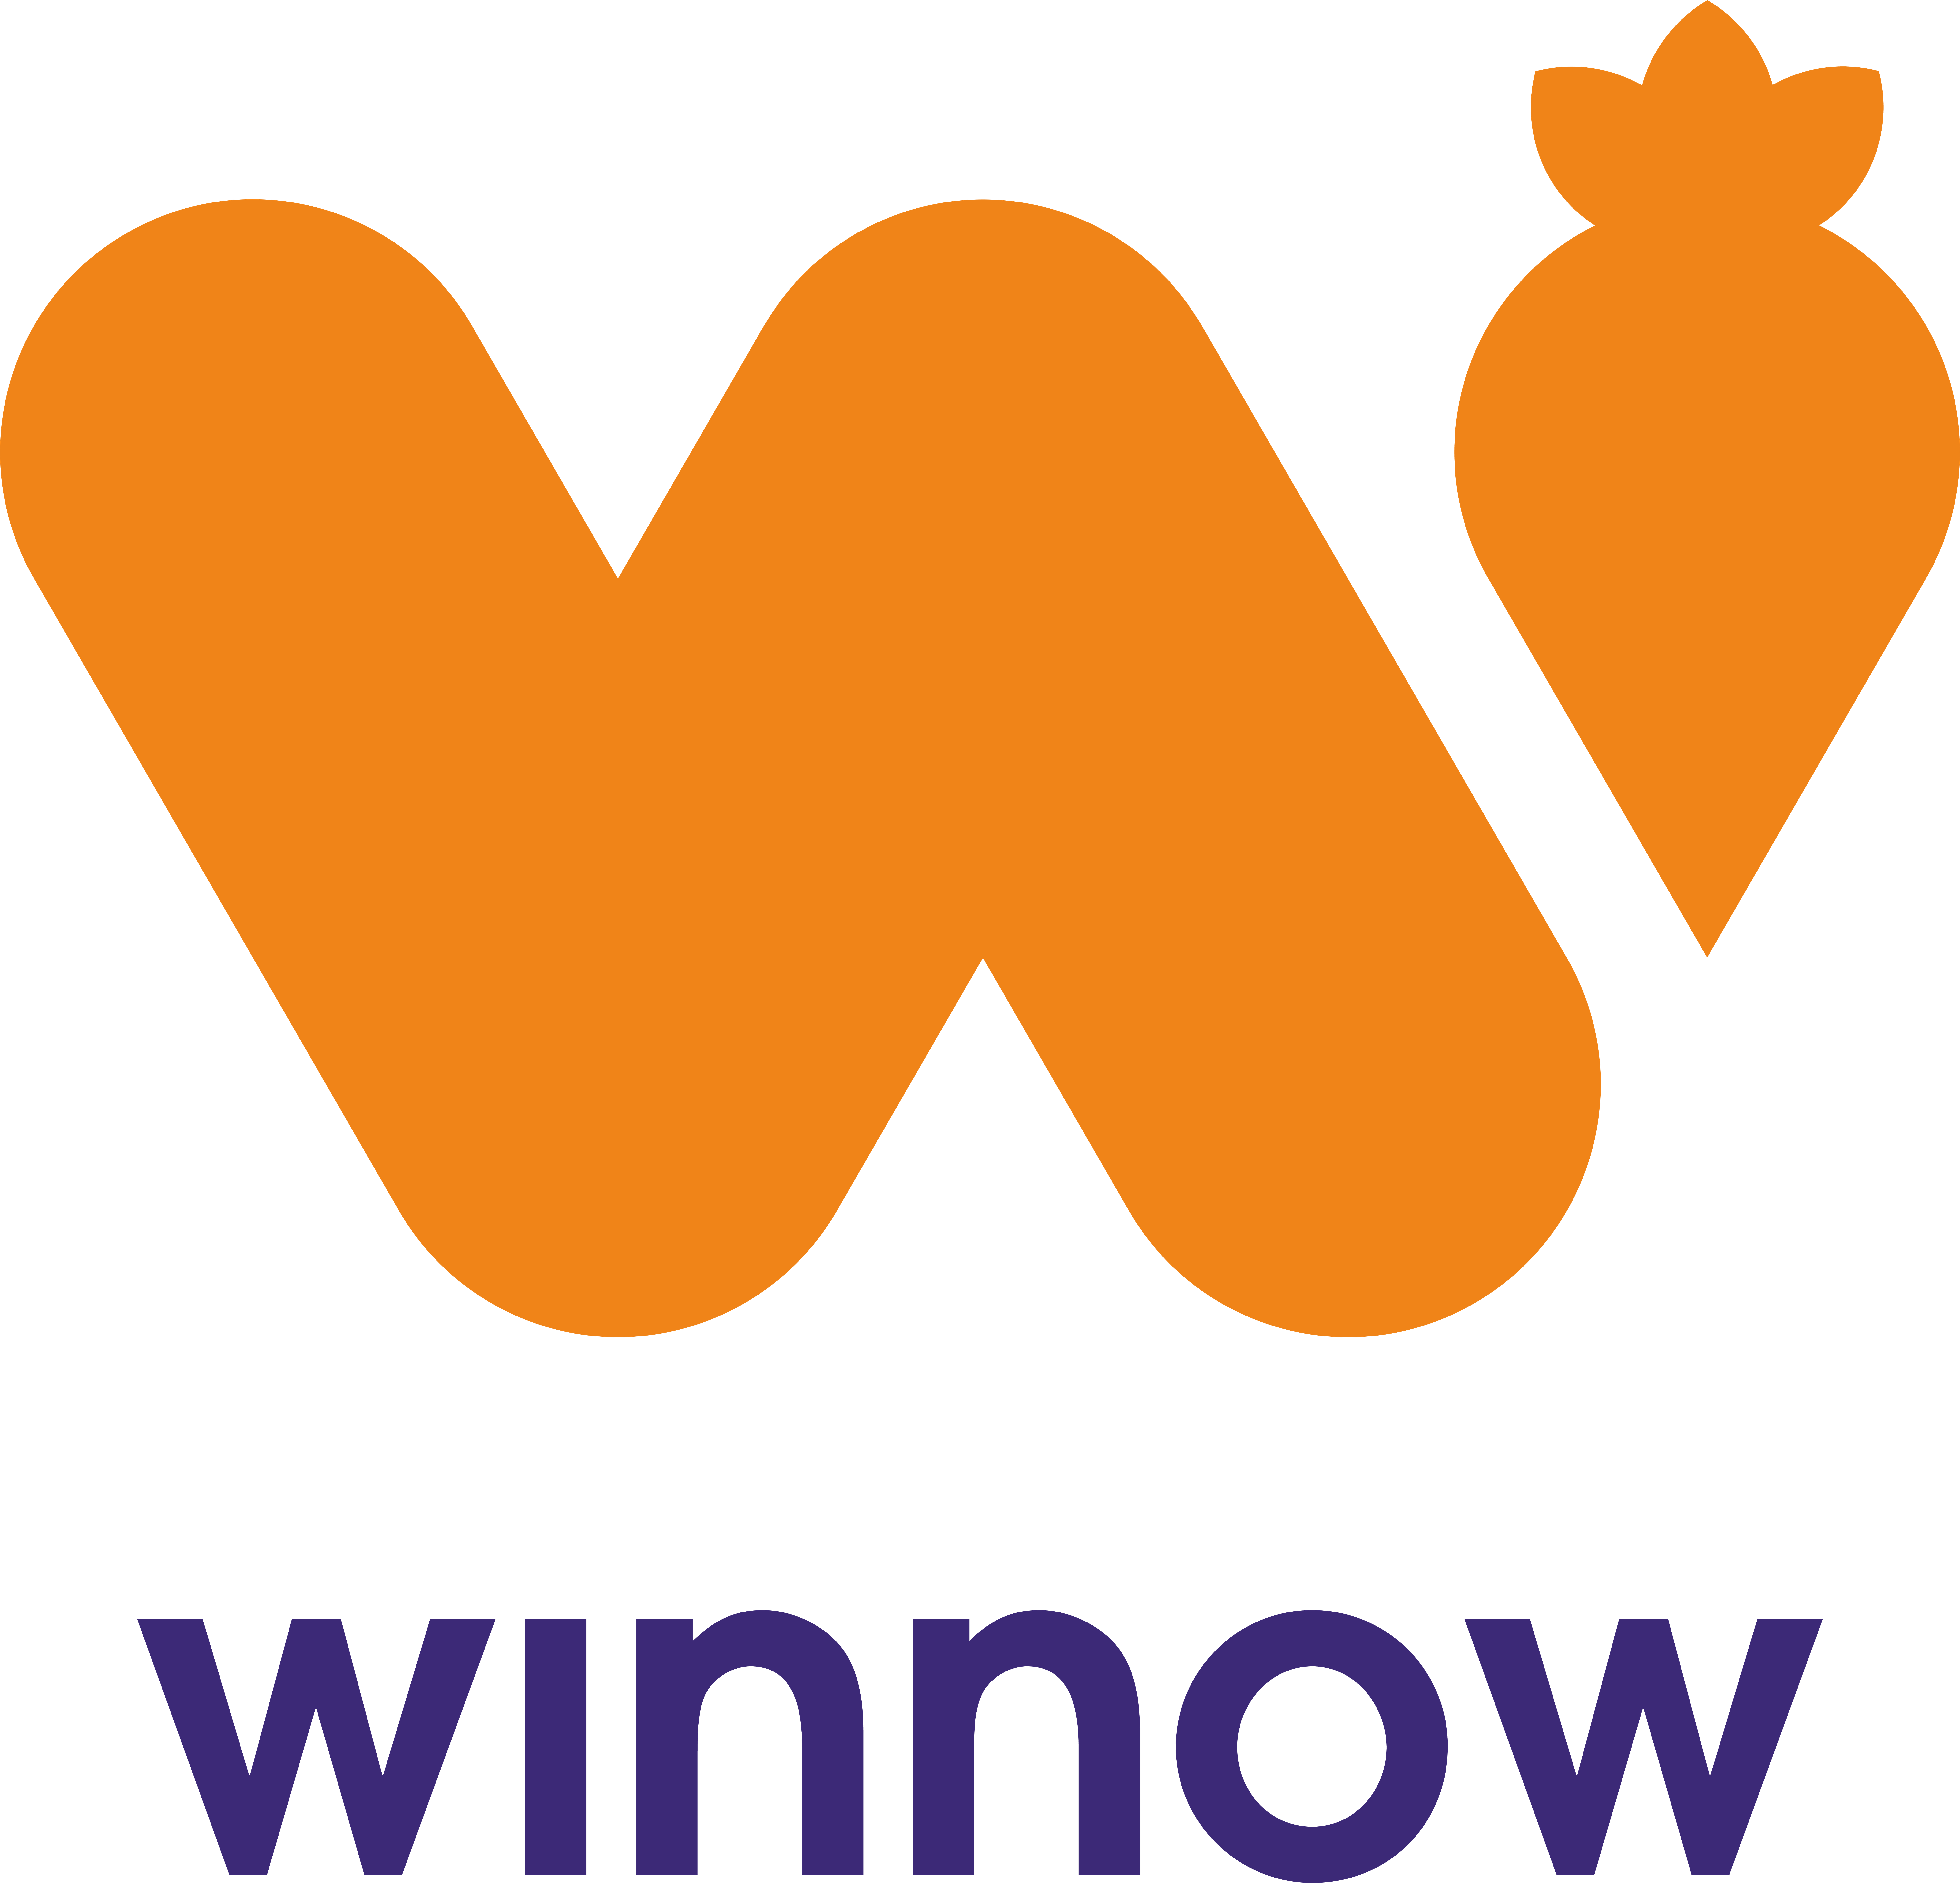 Winnow logo